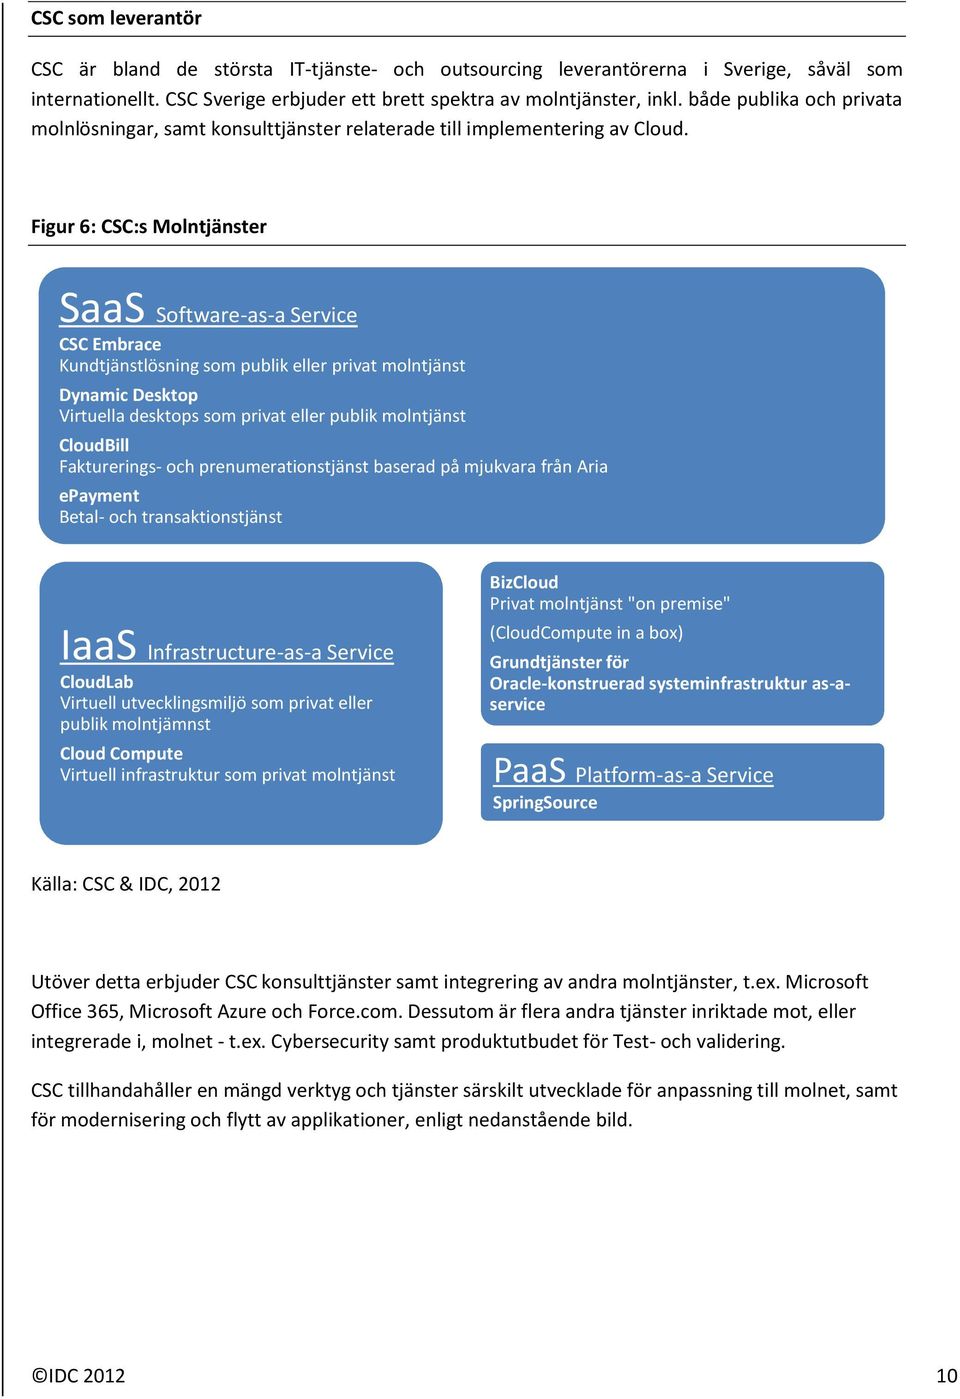 Figur 6: CSC:s Molntjänster SaaS Software-as-a Service CSC Embrace Kundtjänstlösning som publik eller privat molntjänst Dynamic Desktop Virtuella desktops som privat eller publik molntjänst CloudBill